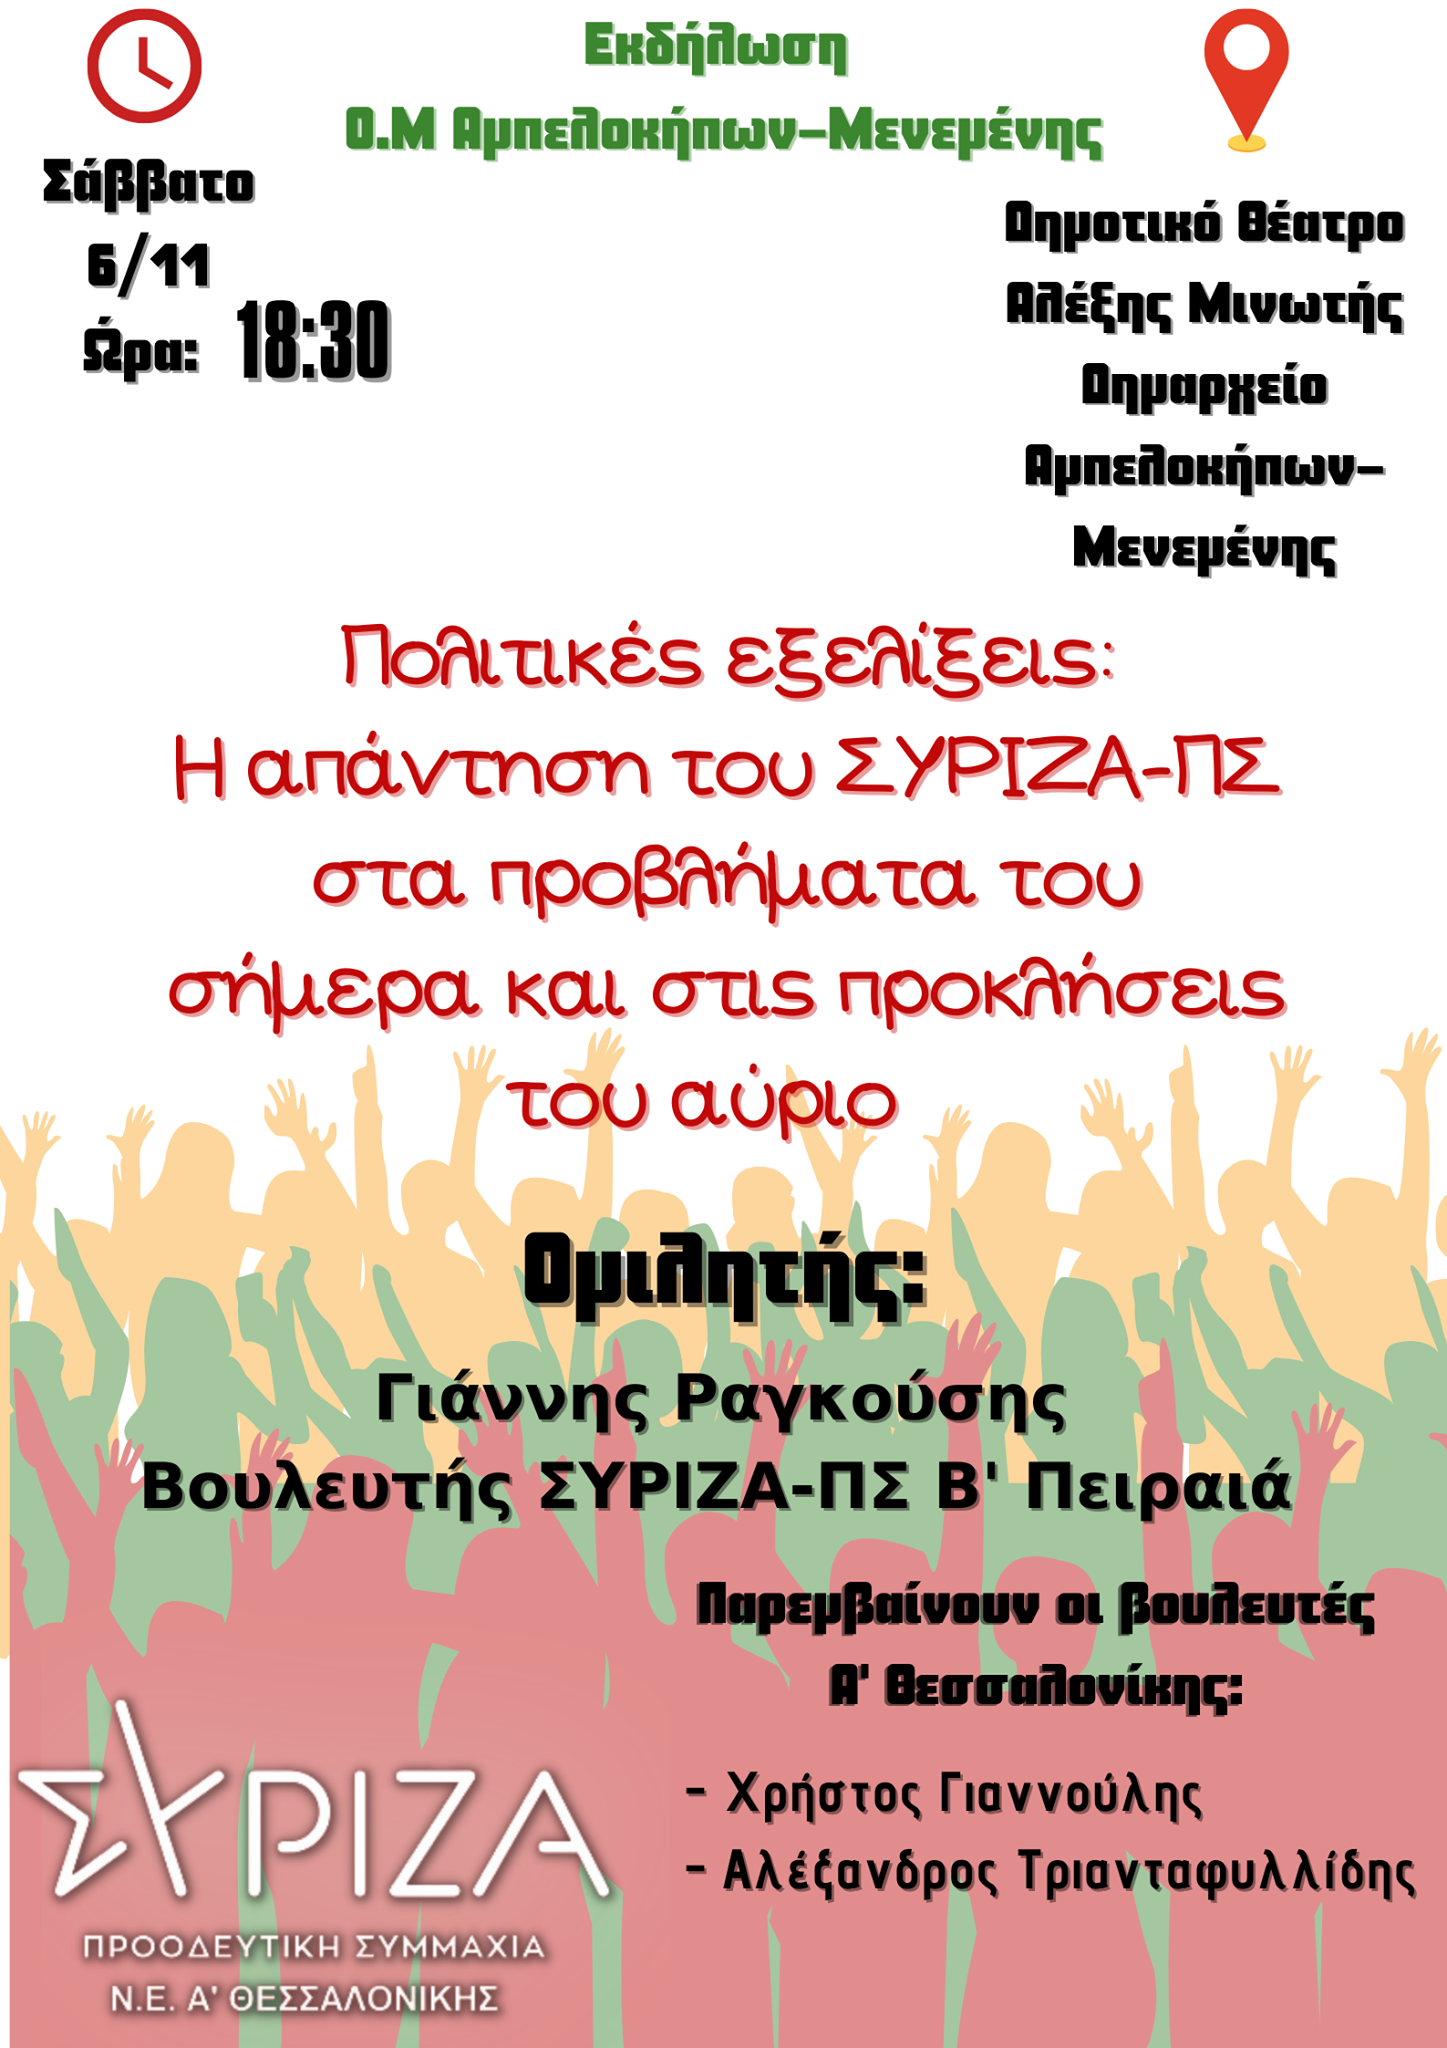 Εκδήλωση της ΟΜ Αμπελοκήπων - Μενεμένης ΣΥΡΙΖΑ - ΠΣ: Απάντηση στα προβλήματα του σήμερα και τις προκλήσεις του αύριο